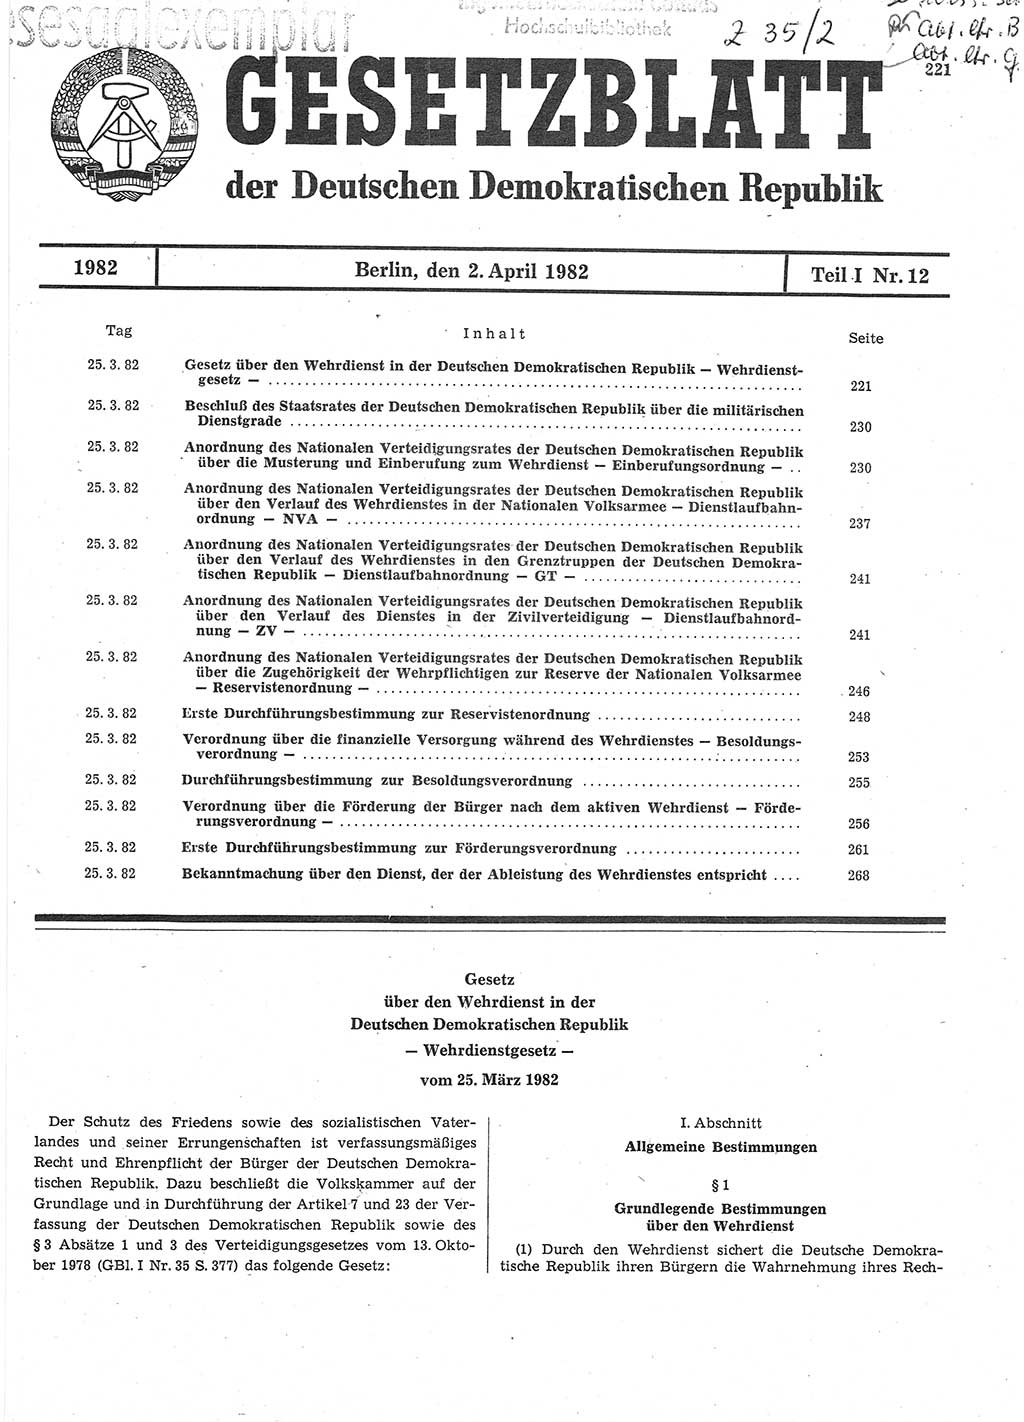 Gesetzblatt (GBl.) der Deutschen Demokratischen Republik (DDR) Teil Ⅰ 1982, Seite 221 (GBl. DDR Ⅰ 1982, S. 221)